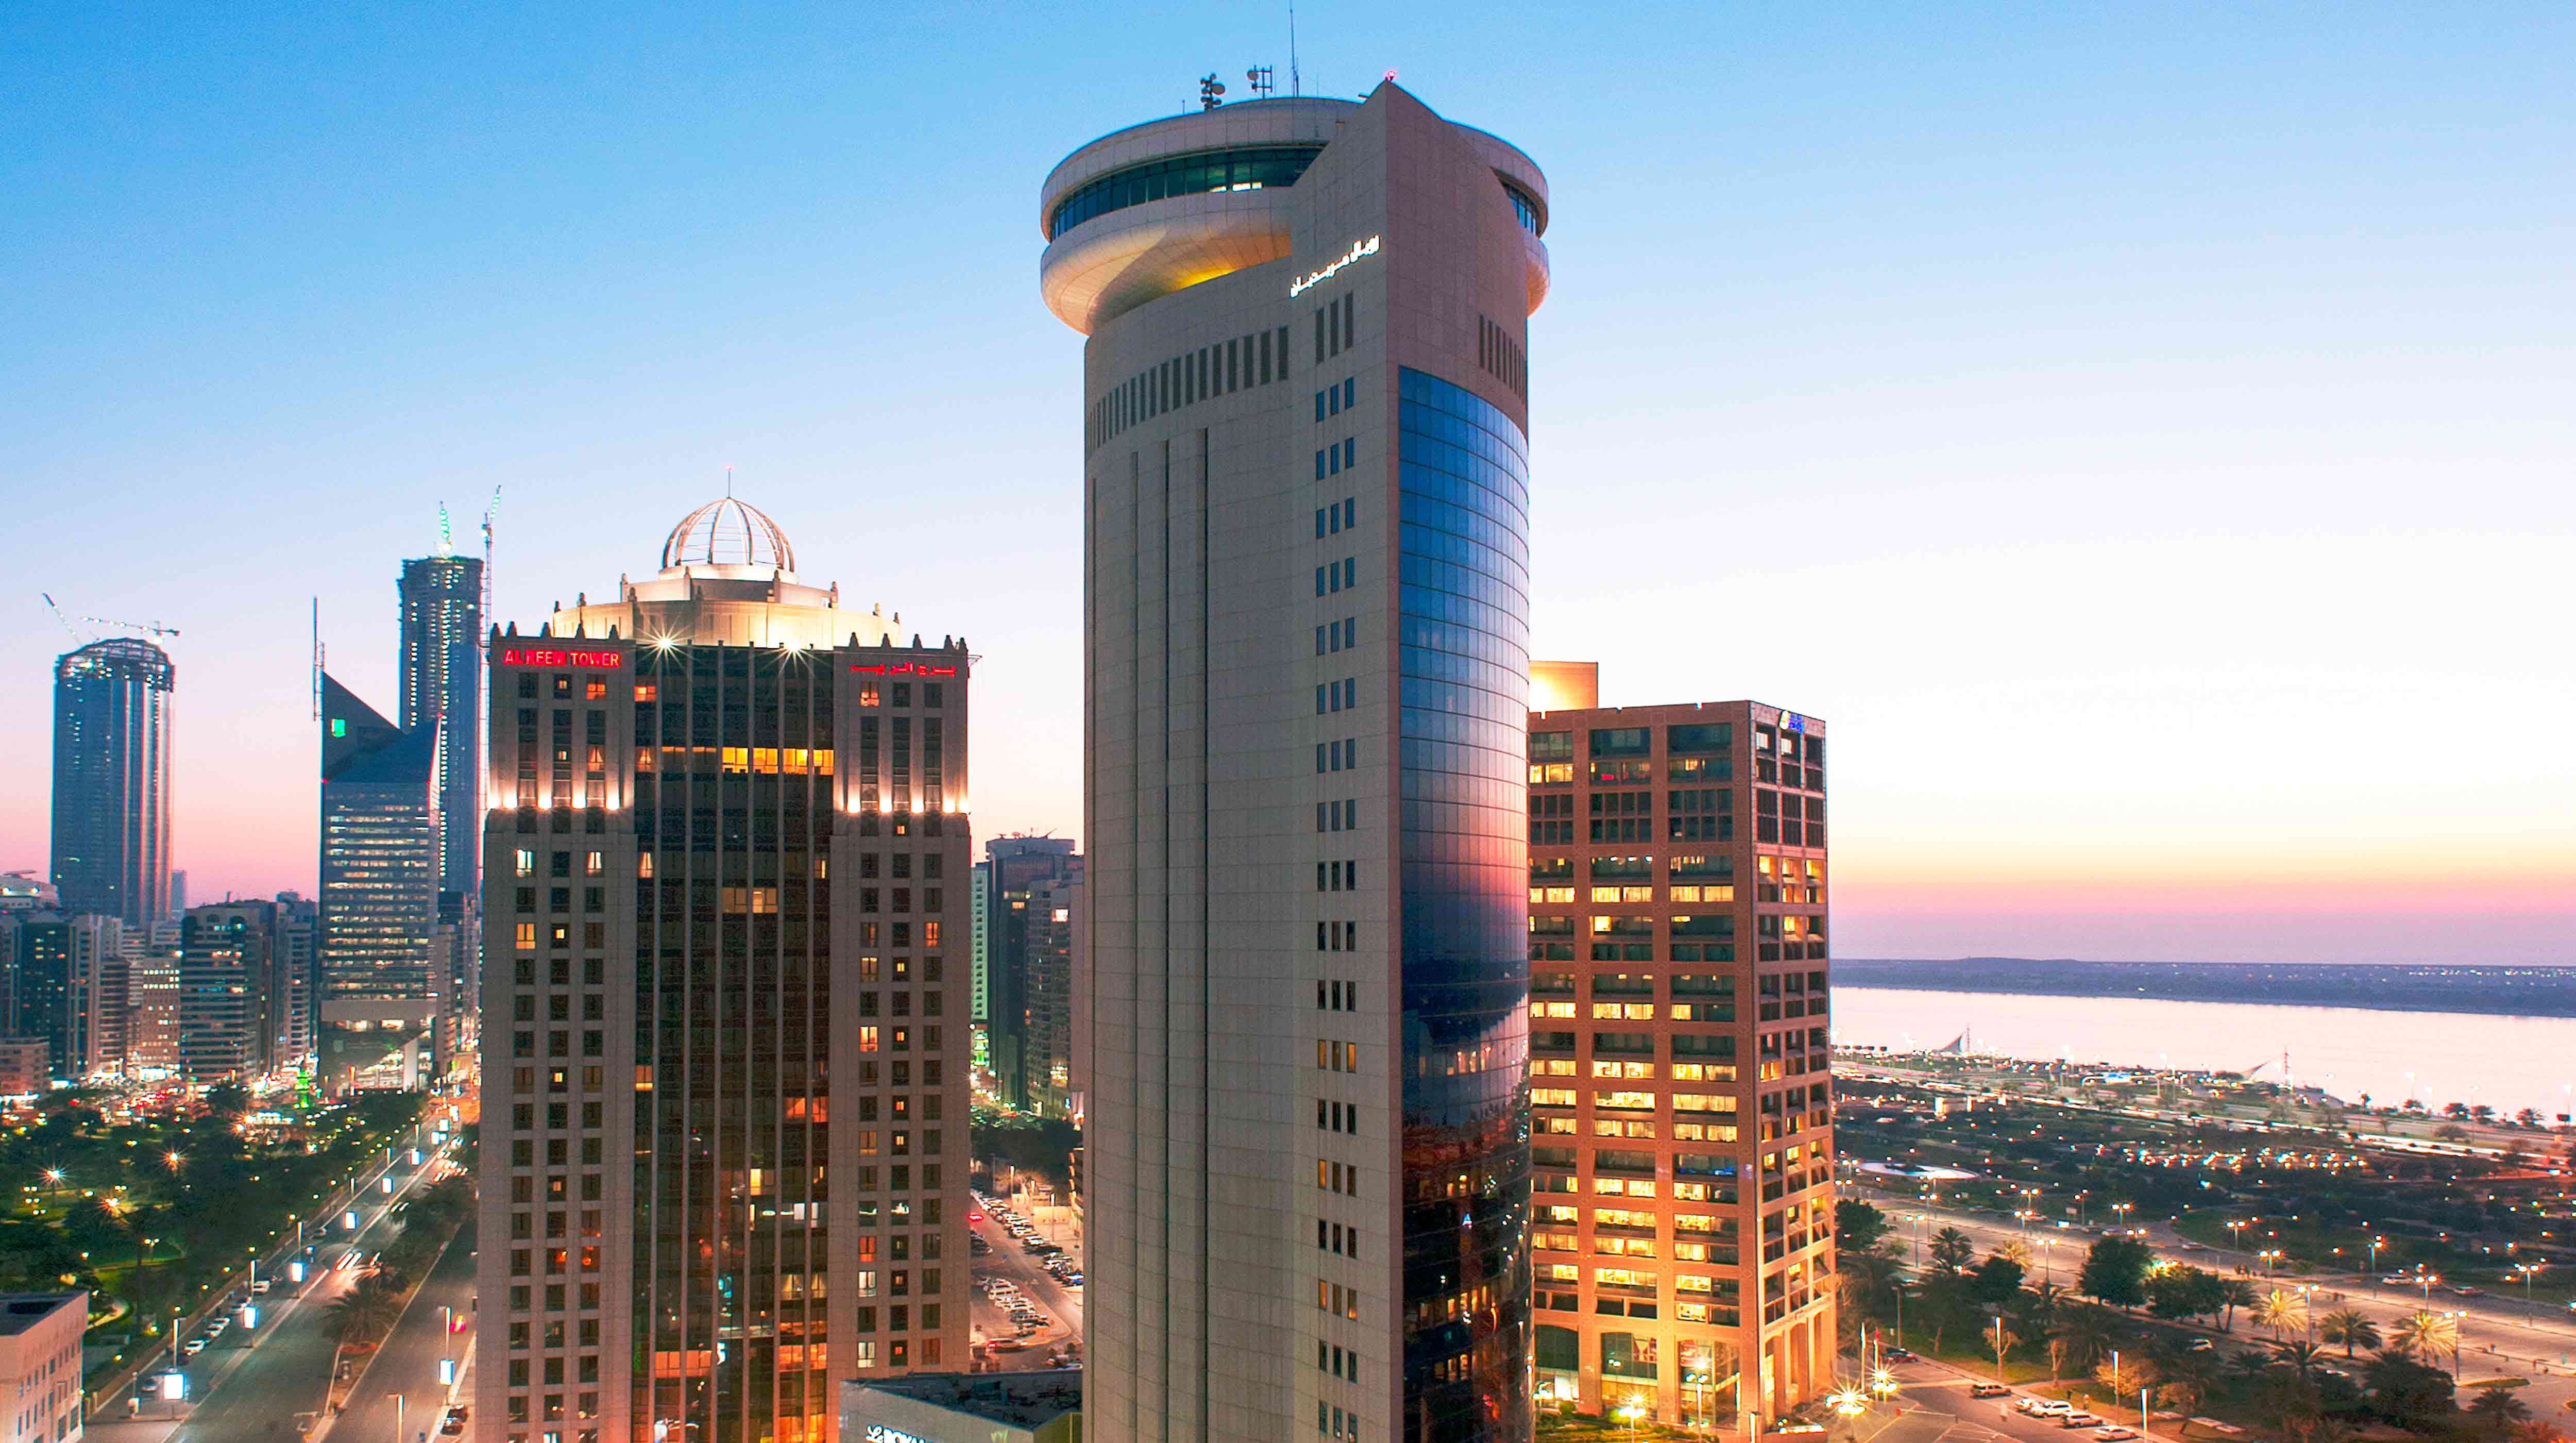 Le Méridien Abu Dhabi